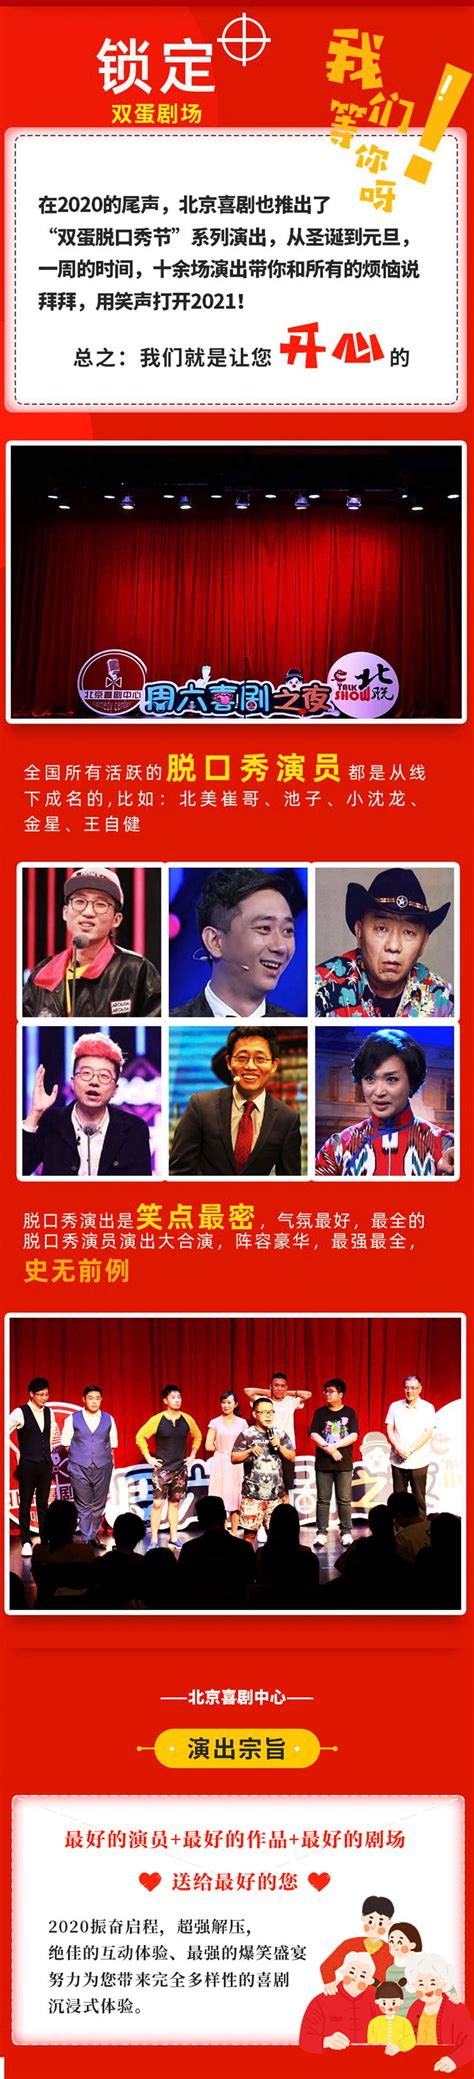 【北京】跨年脱口秀专场《滚蛋呗2020》选座订票-看看票务